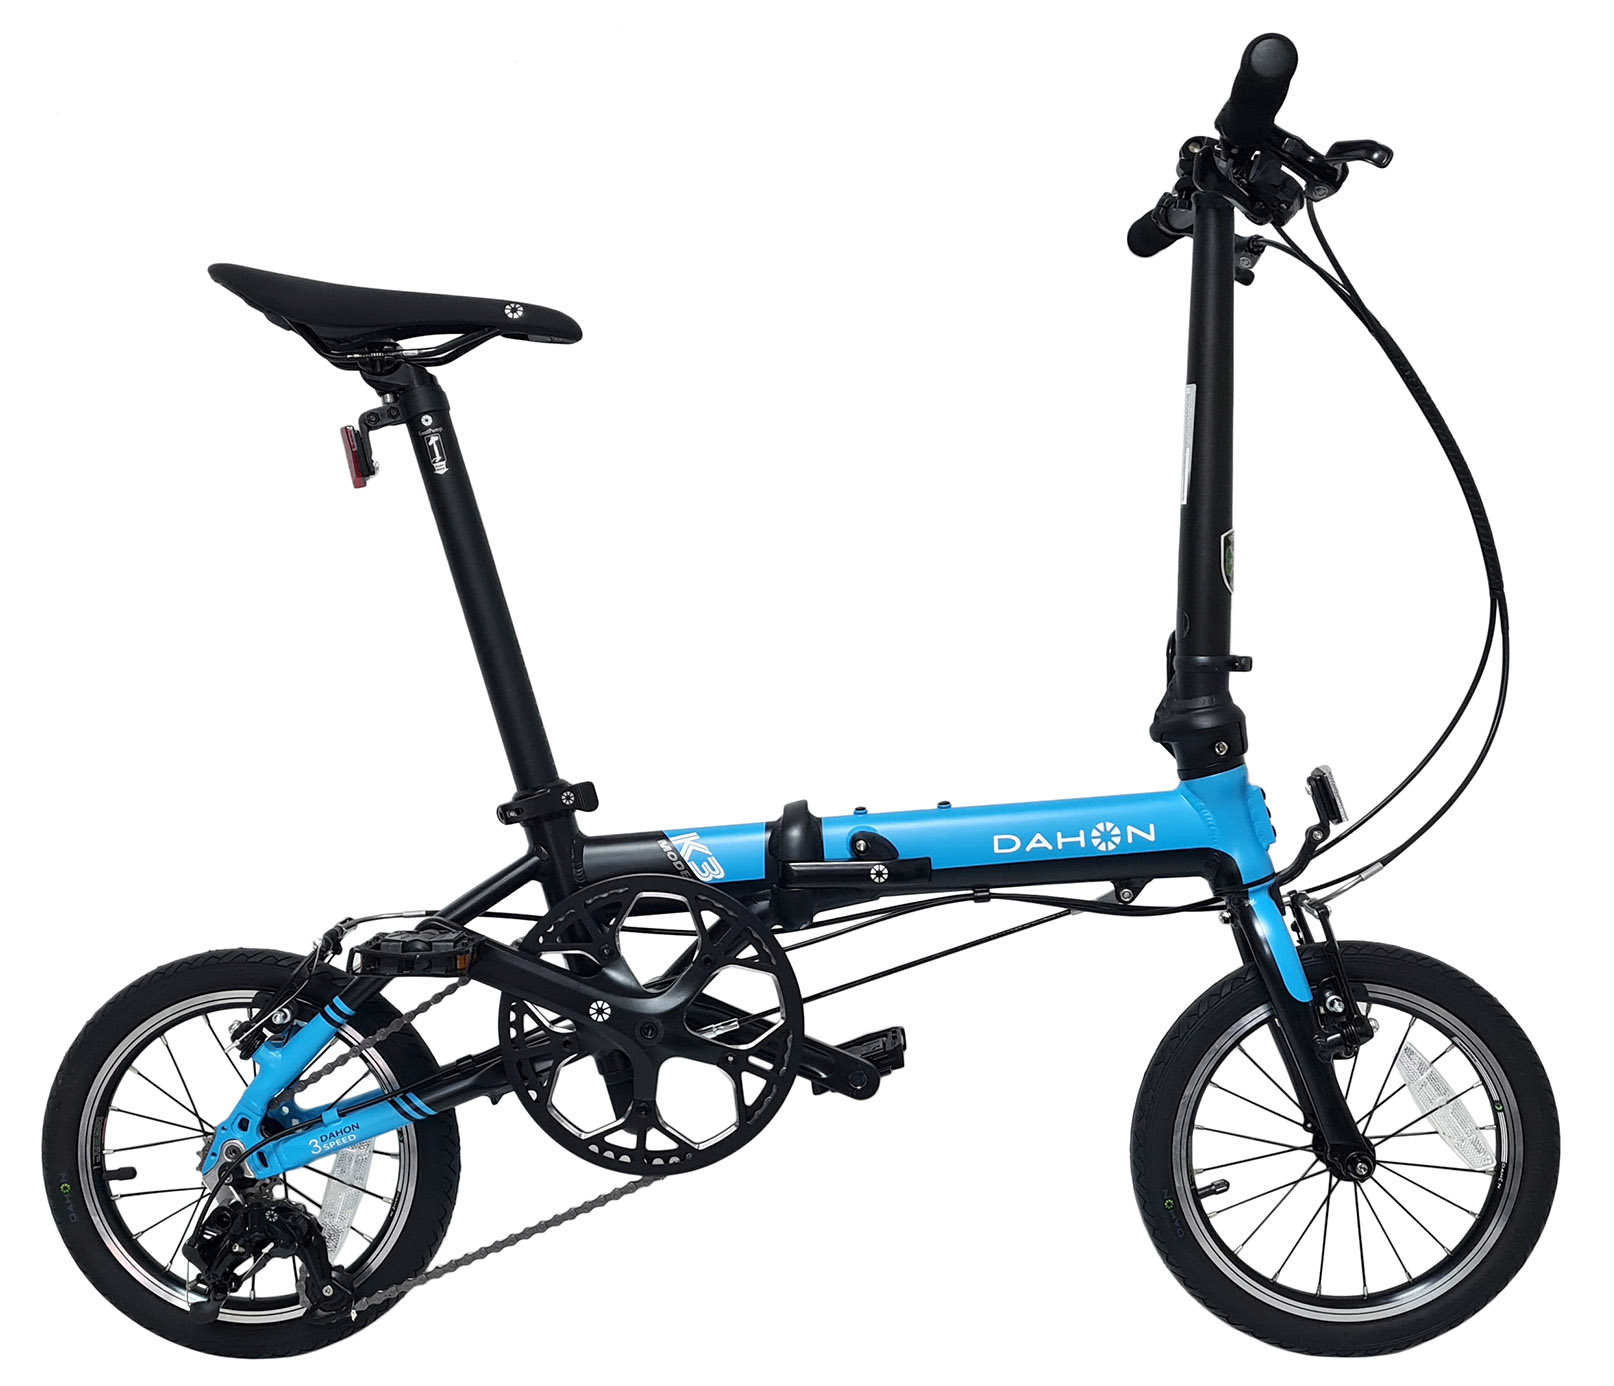  Отзывы о Складном велосипеде Dahon K3 (2021) 2021